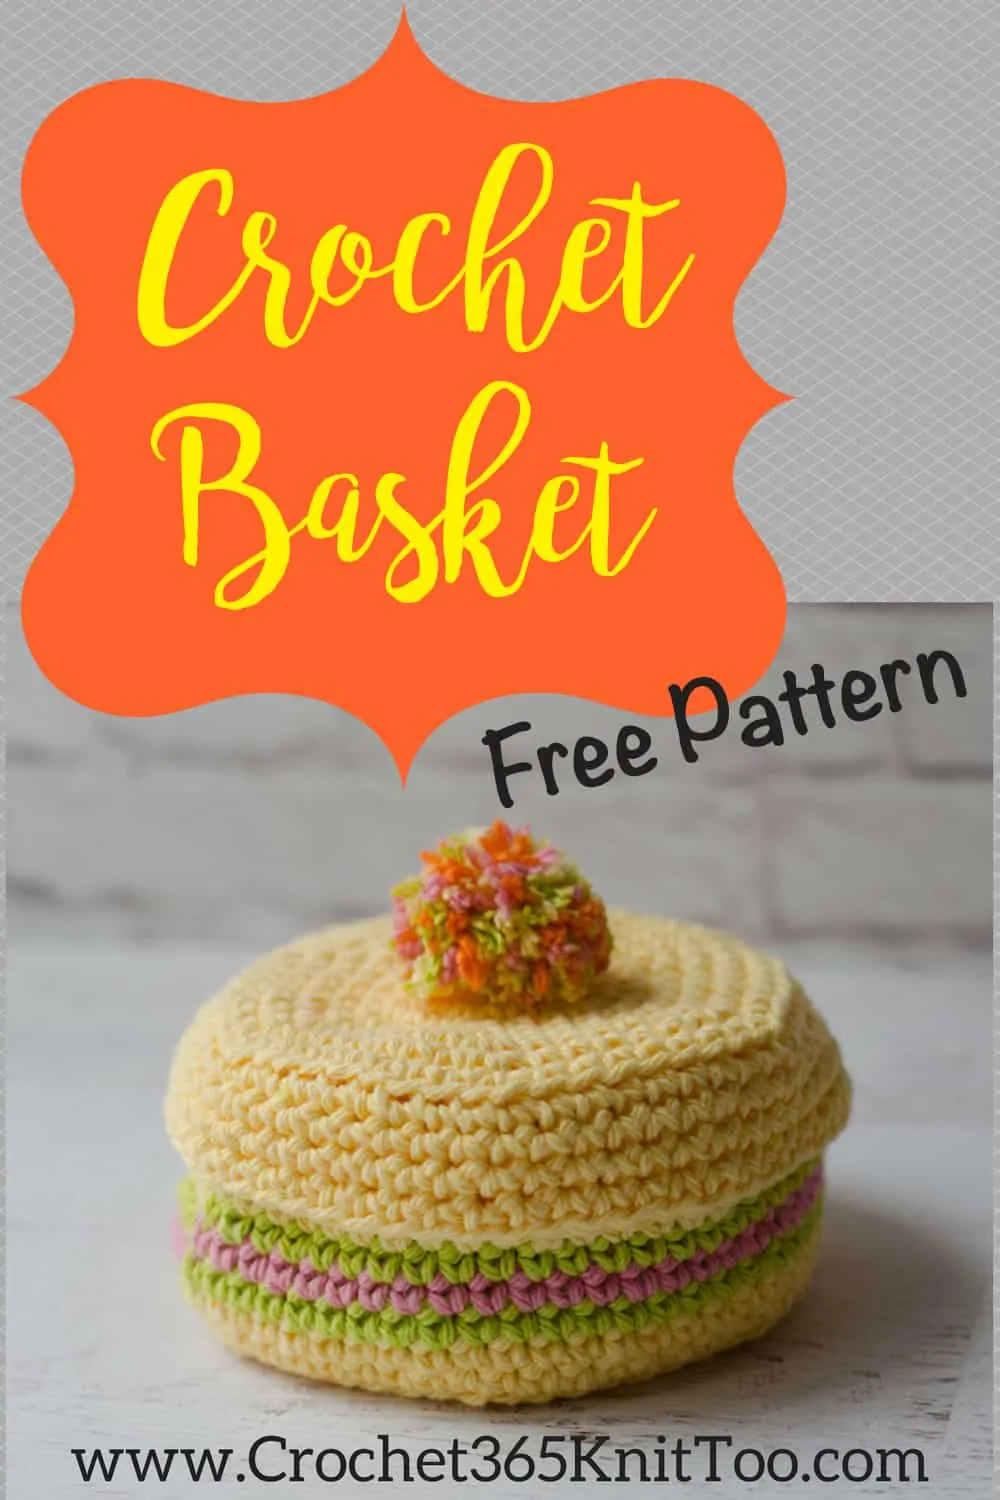 Crochet coaster basket pattern is fun to crochet. Easy, free, crochet basket pattern!